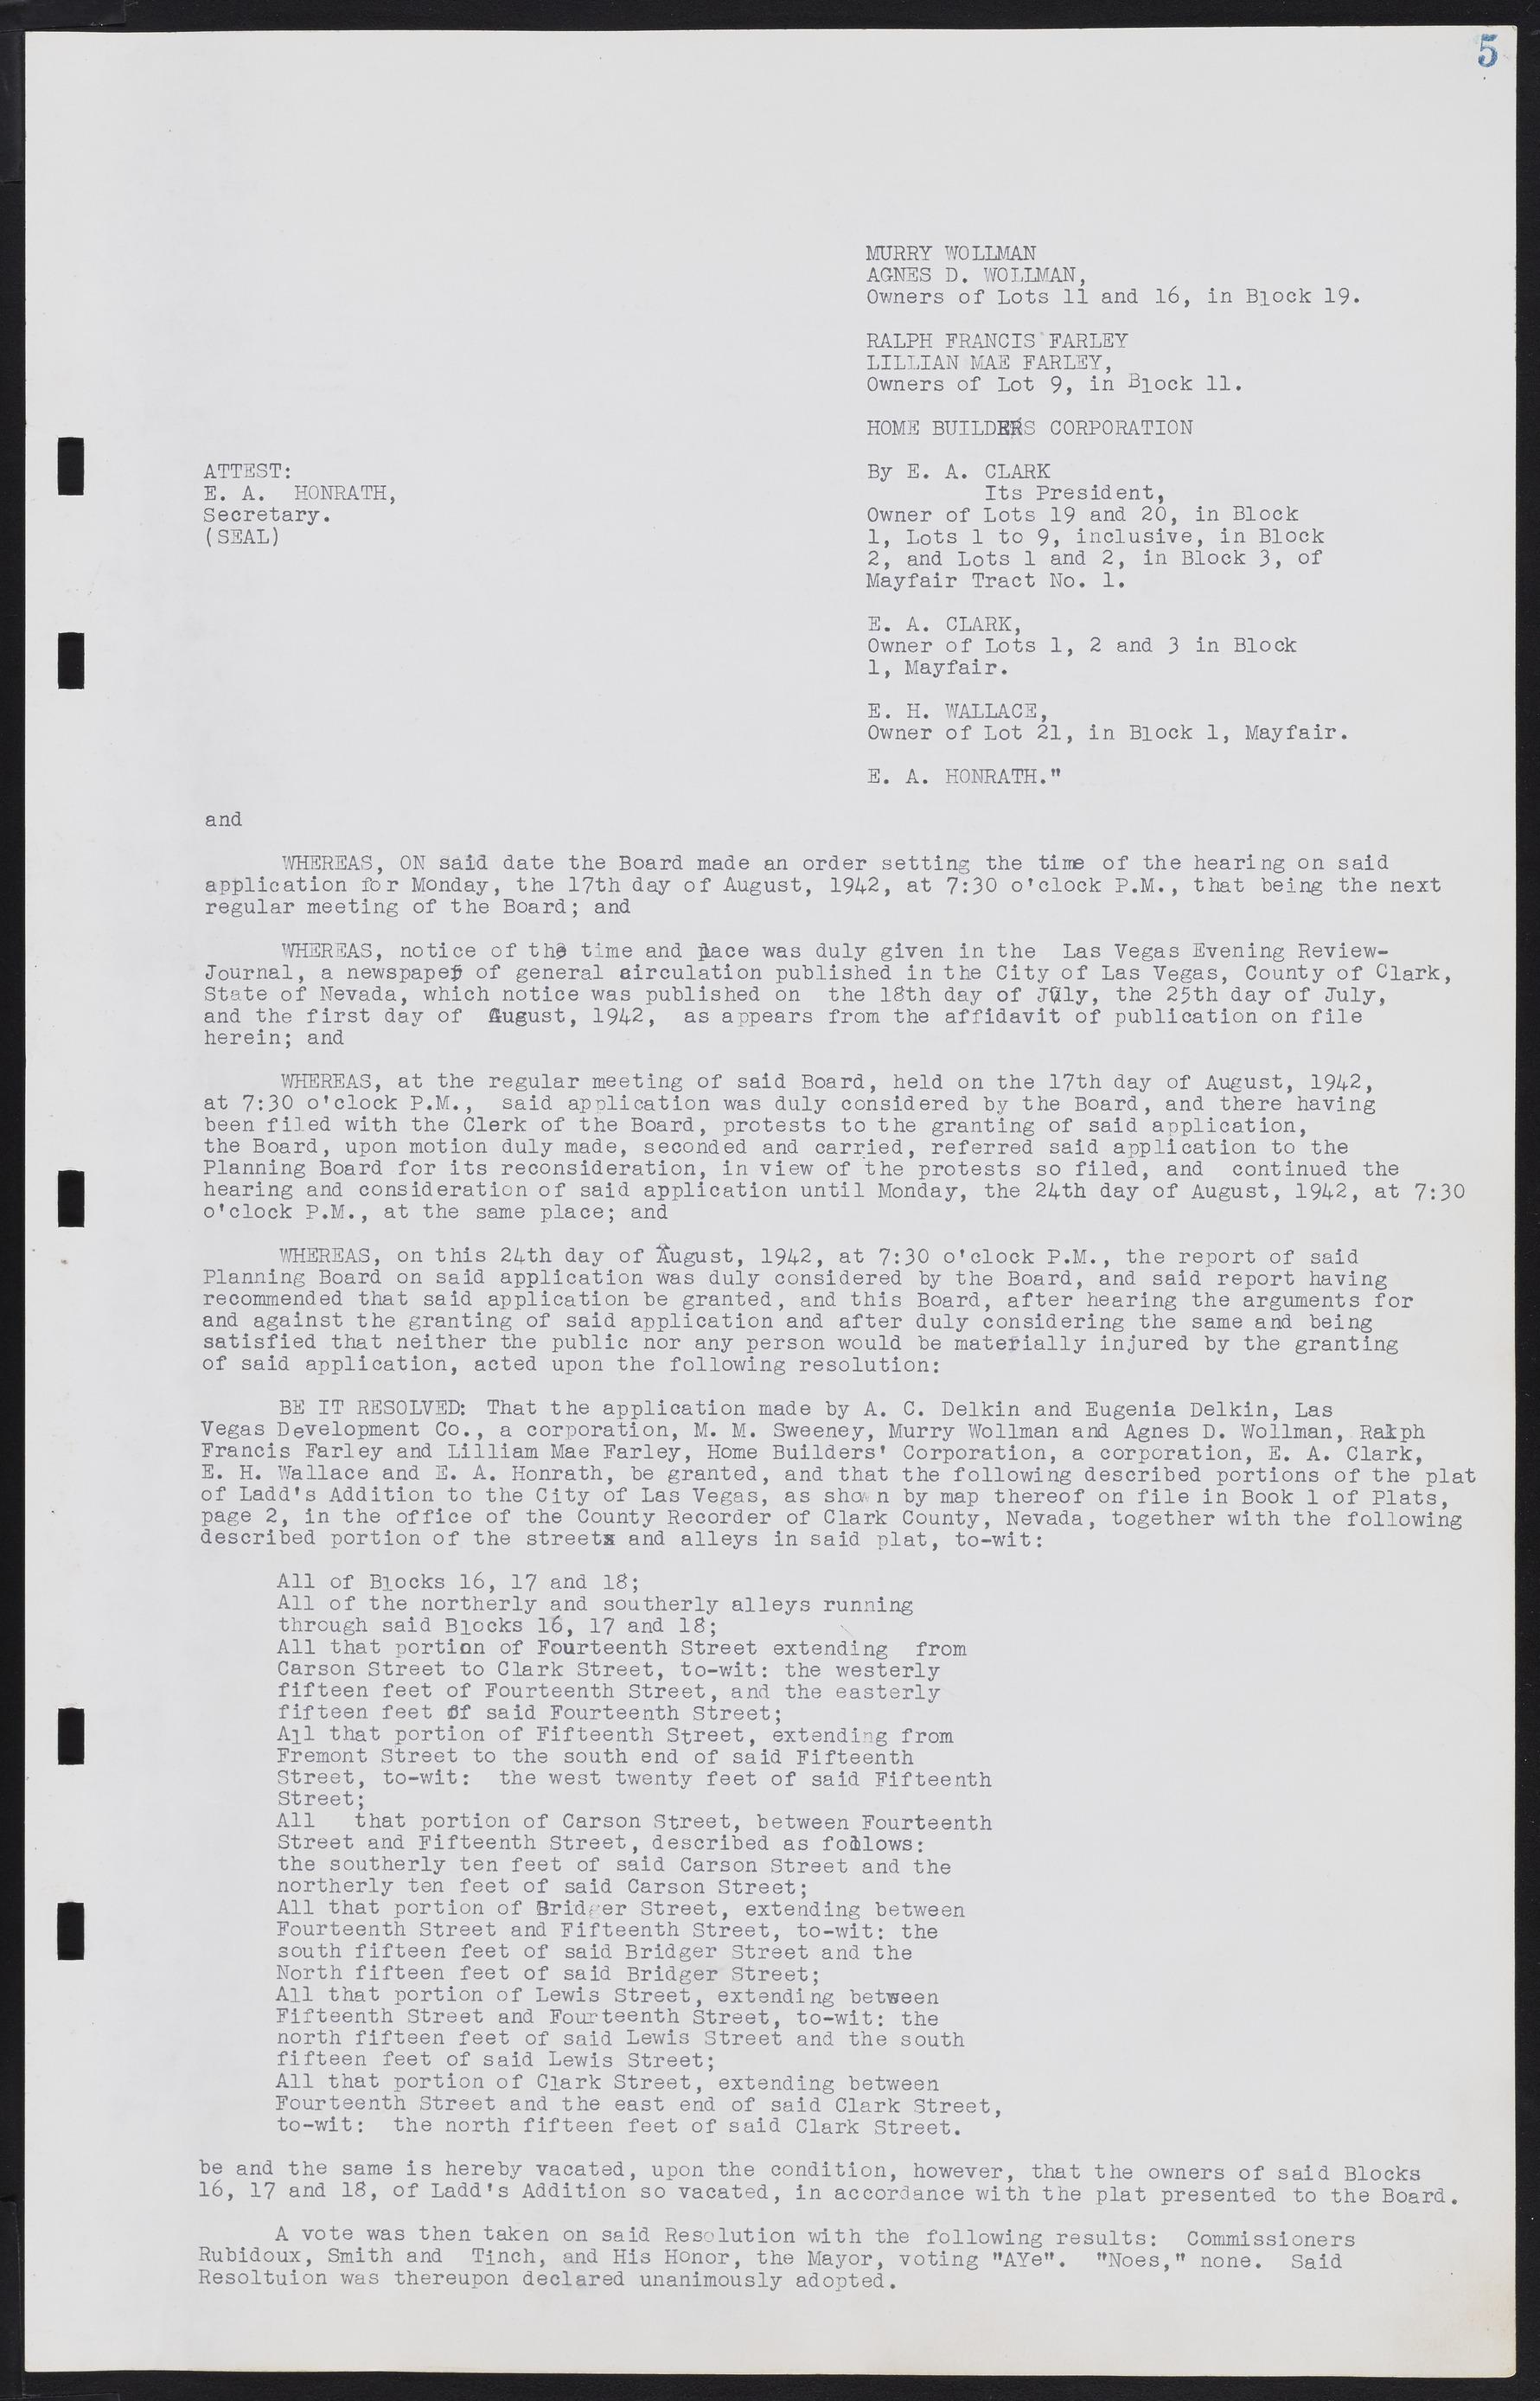 Las Vegas City Commission Minutes, August 11, 1942 to December 30, 1946, lvc000005-13